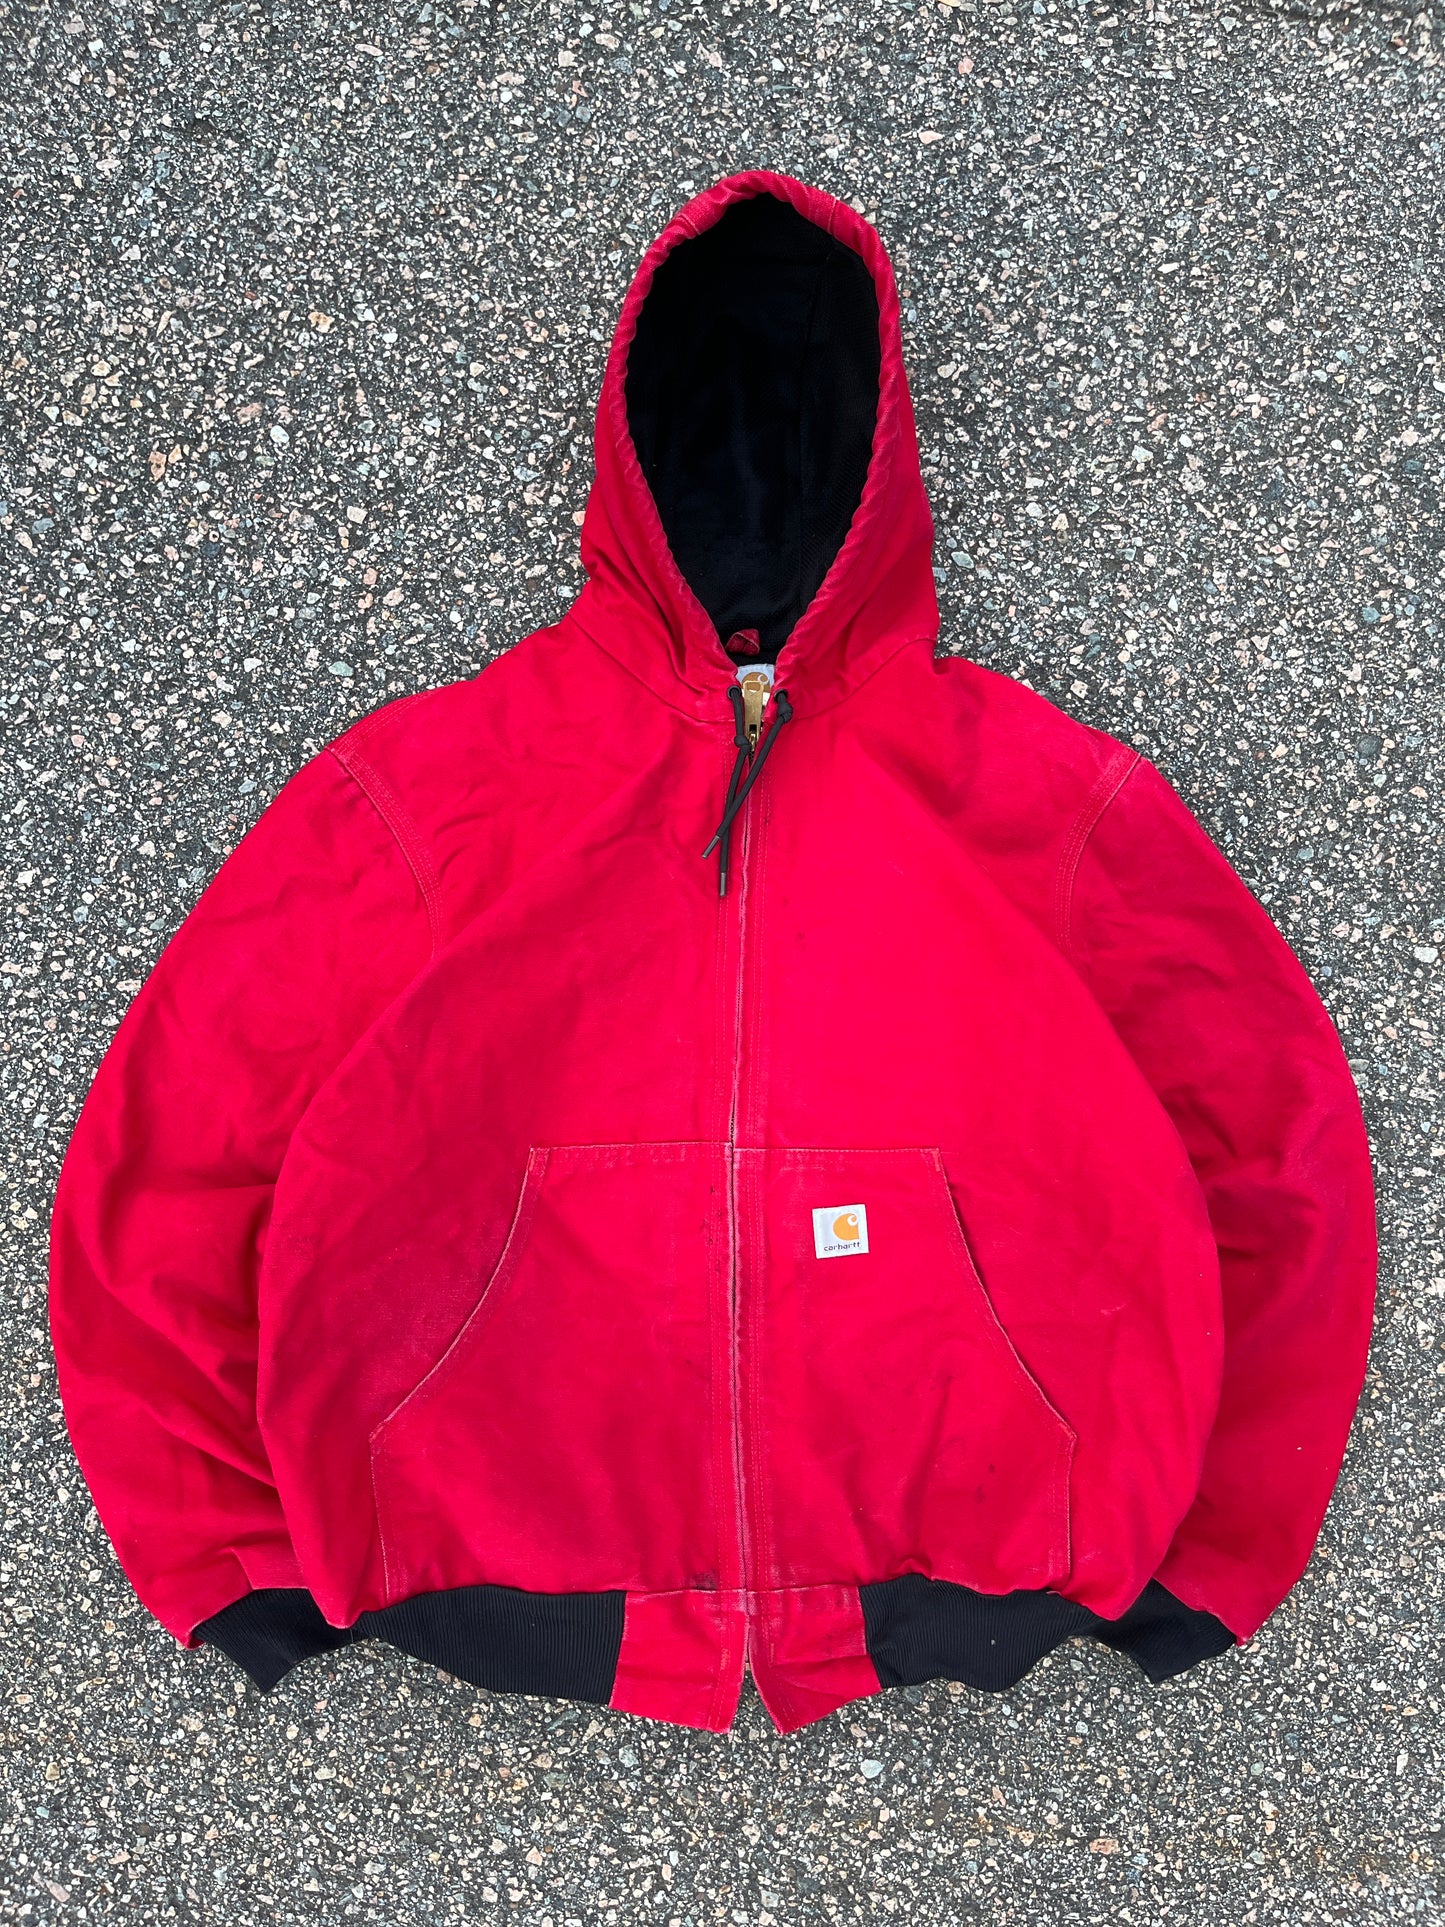 Faded Strawberry Red Carhartt Active Jacket - Boxy Medium